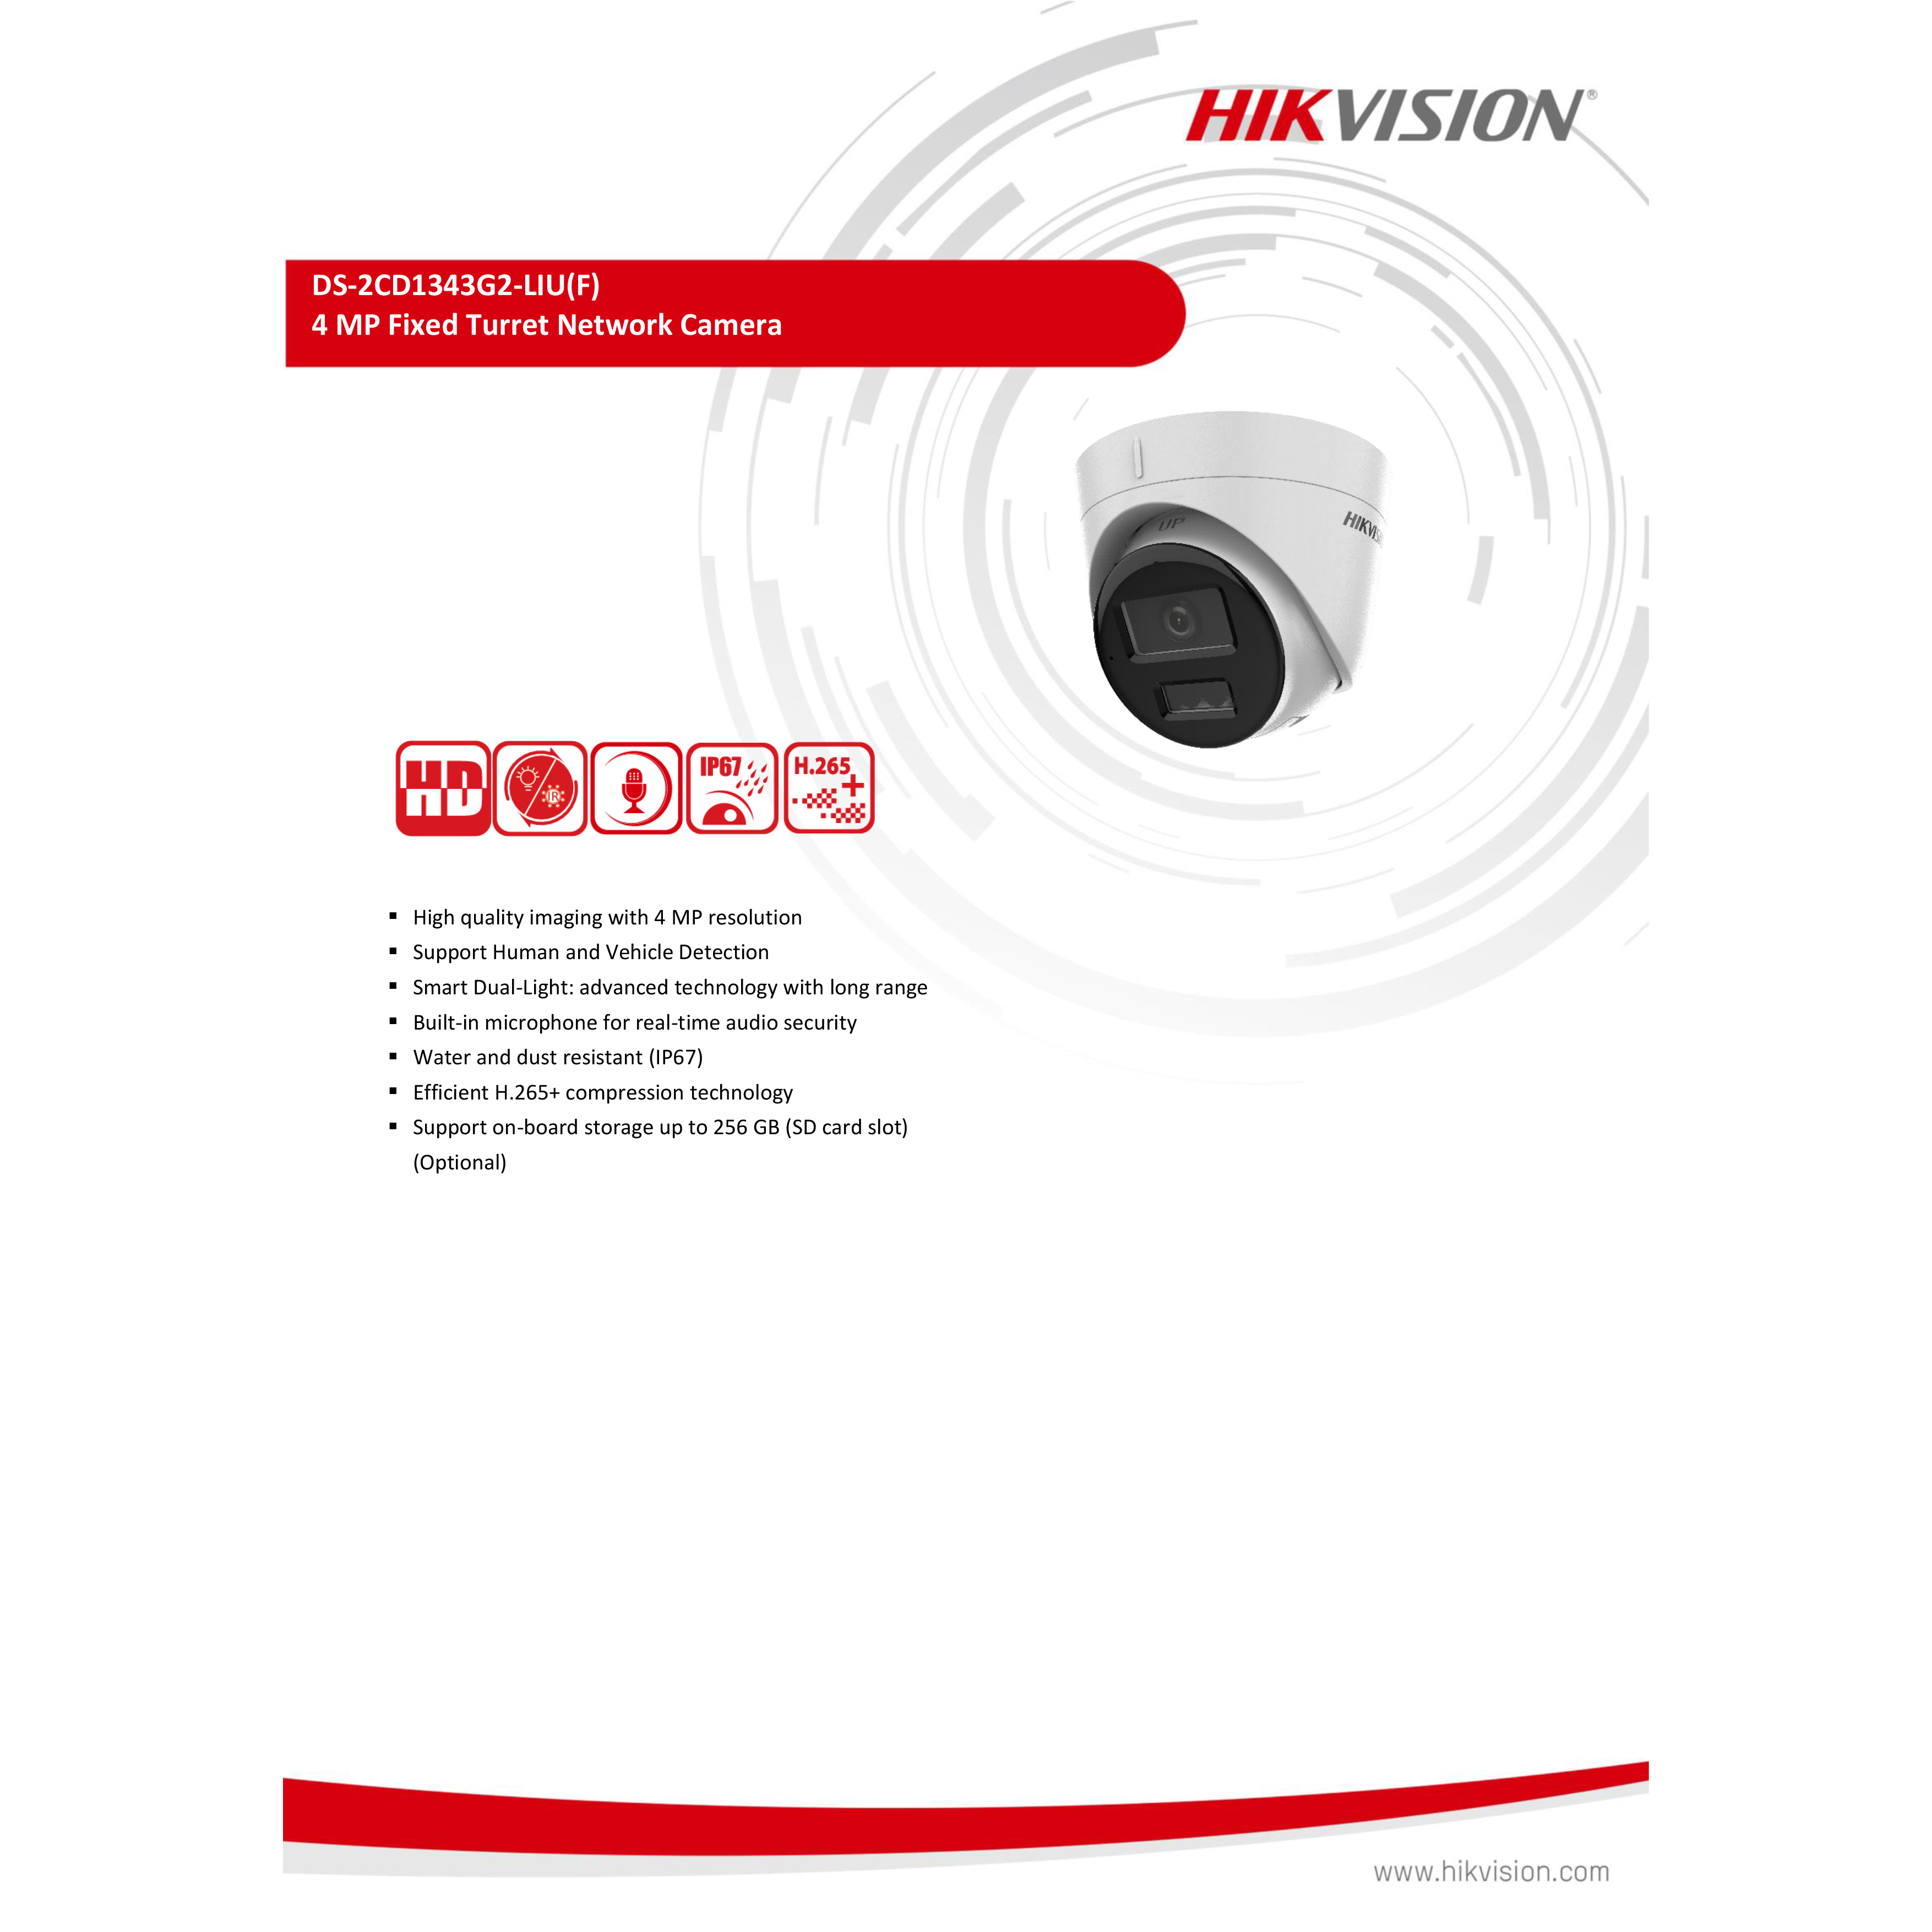 hikvision-ds-2cd1343g2-liu-4mm-กล้องวงจรปิดระบบ-ip-4mp-มีไมค์ในตัว-เลือกปรับโหมดเป็นภาพสี-24ชม-หรือขาวดำตอนกลางคืนได้